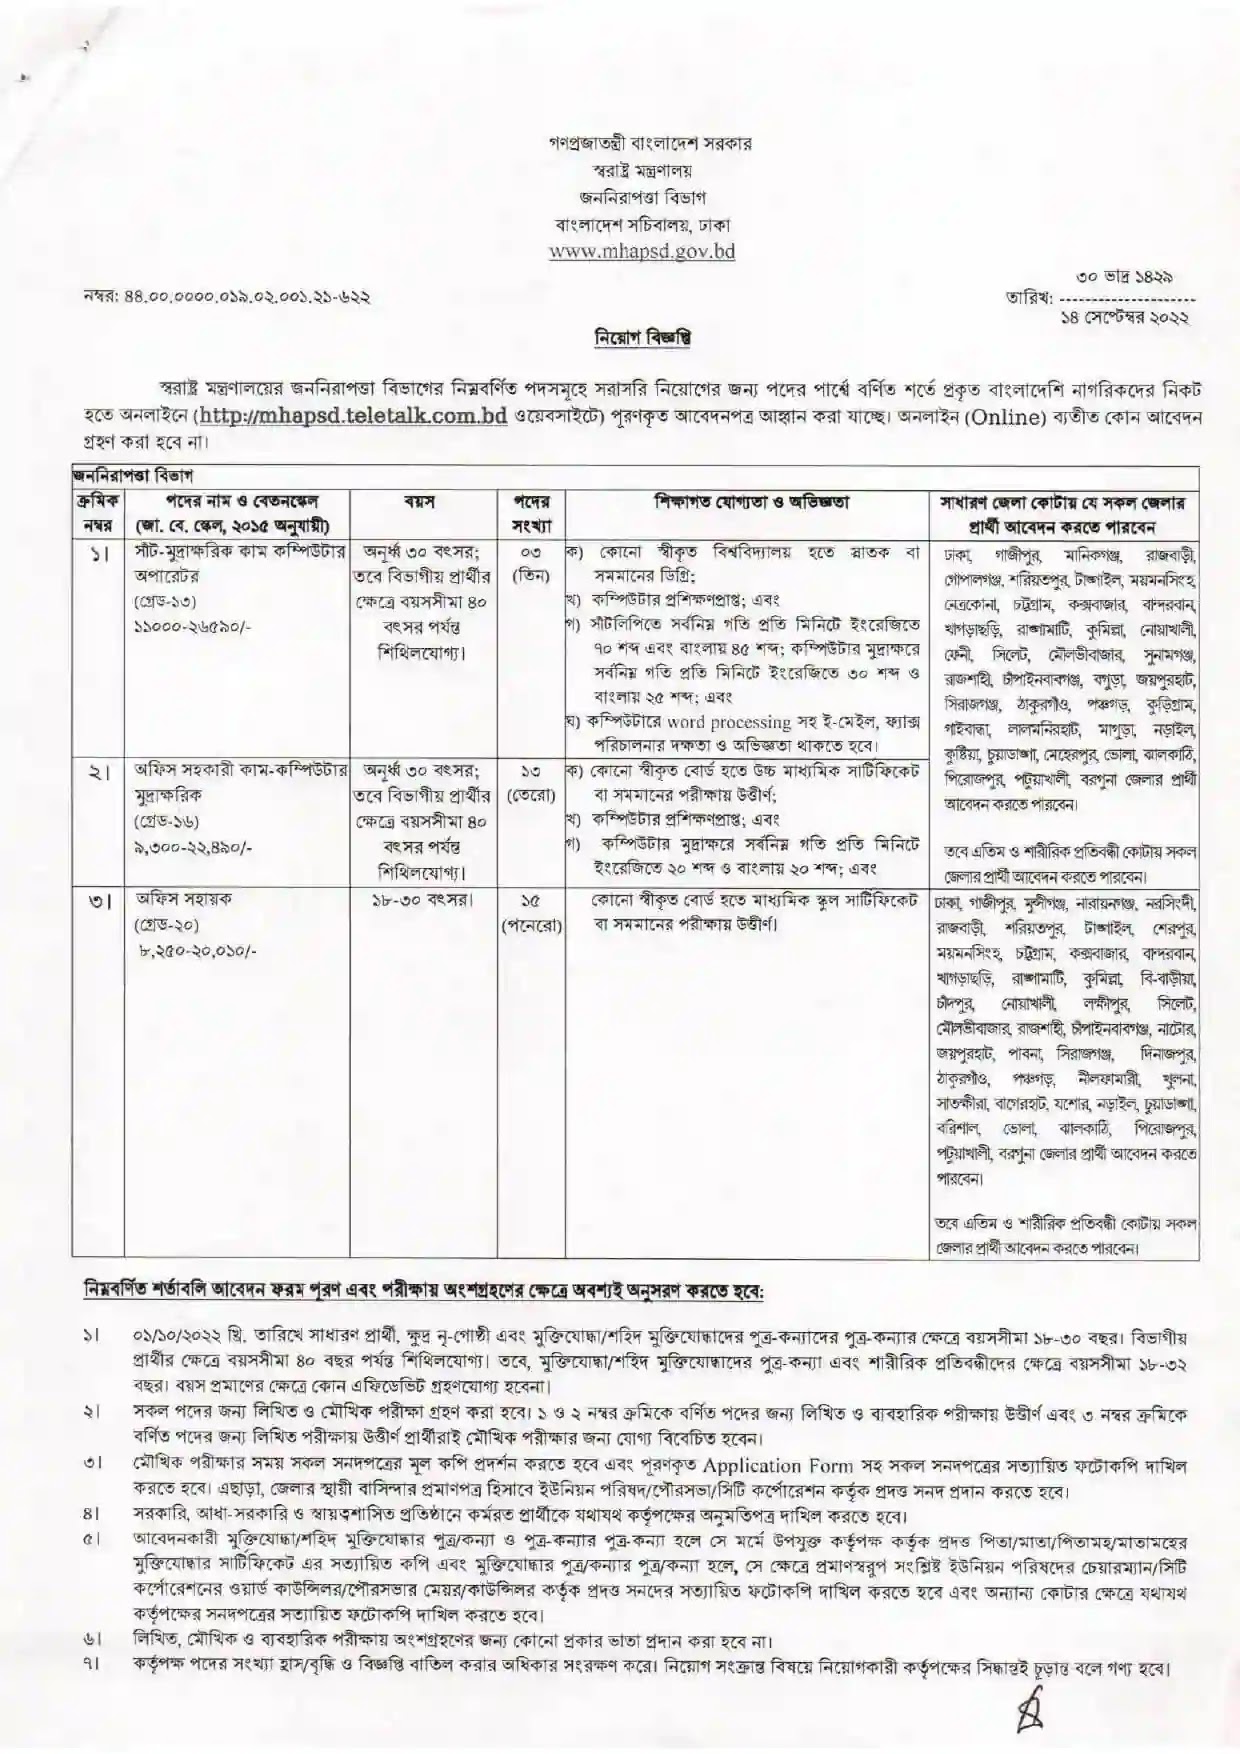 স্বরাষ্ট্র মন্ত্রণালয় নিয়োগ বিজ্ঞপ্তি ২০২২ ।Home Ministry Recruitment Circular 2022 || mhapsd.teletalk.com.bd